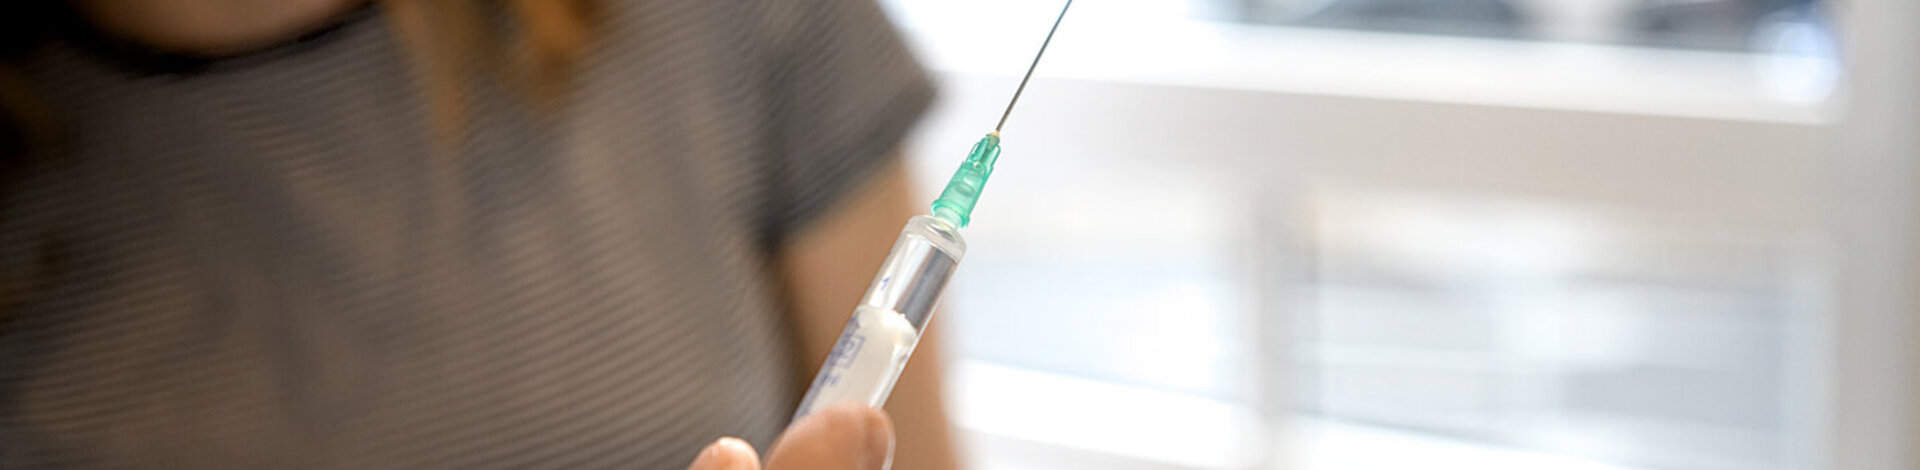 Ein Arzt hält eine Spritze in der Hand. Er wird damit eine Patientin impfen.